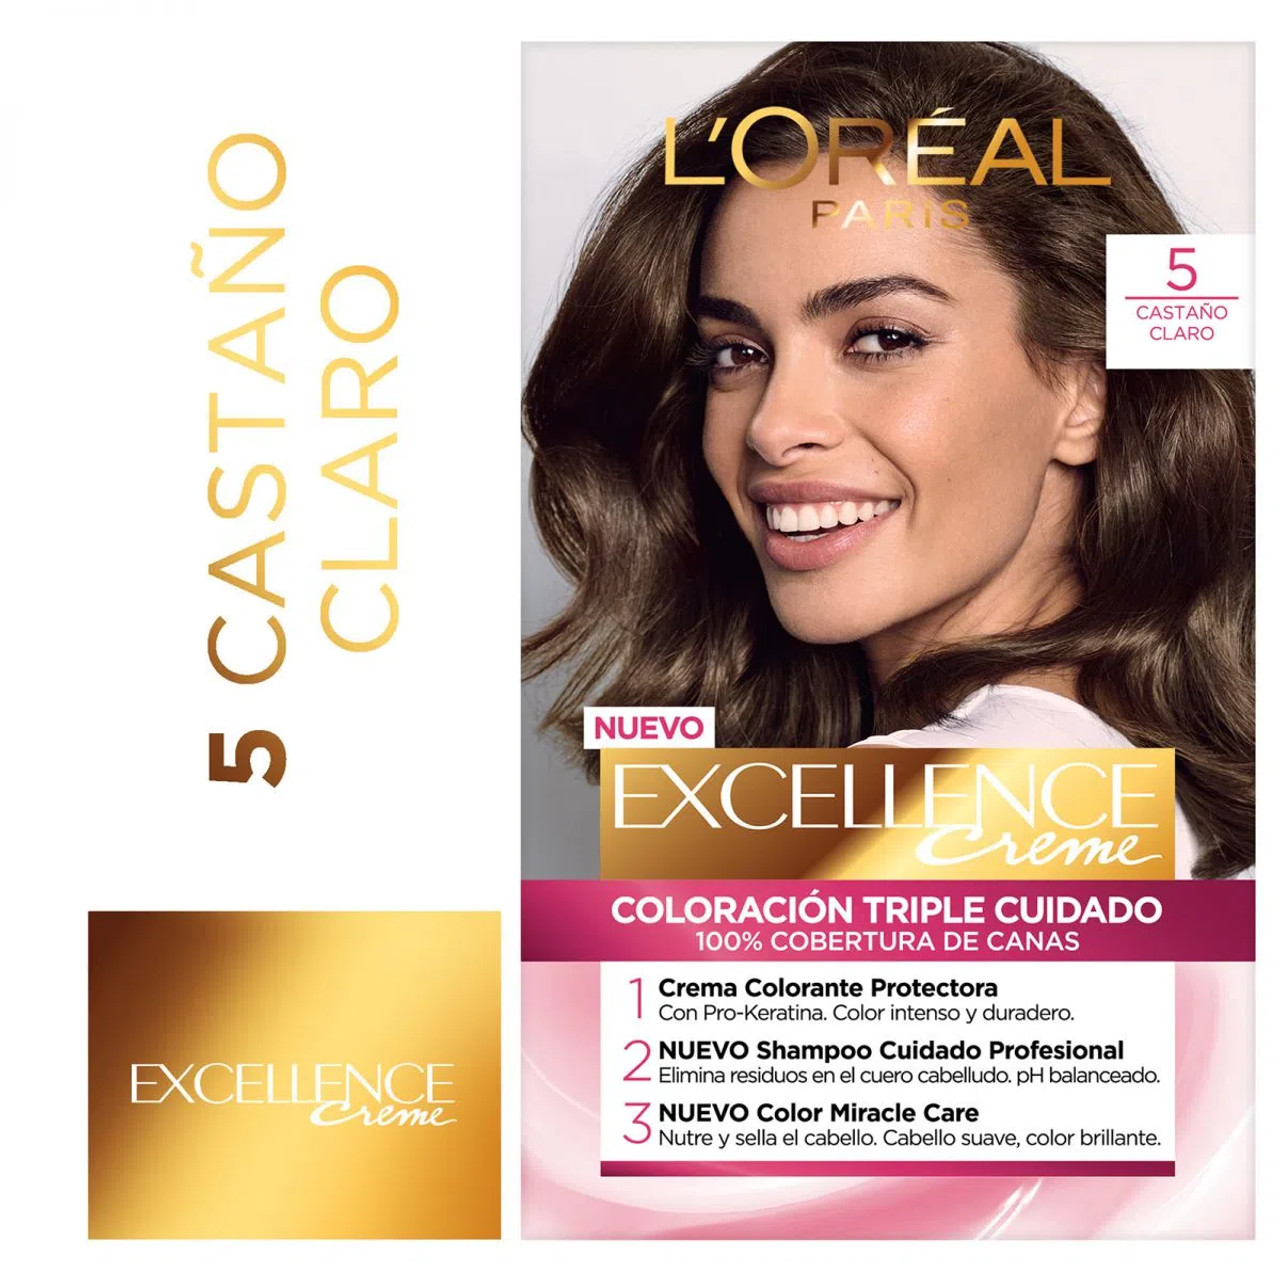 nåde Tag ud dansk L'Oréal Paris Kit de Coloración Castaño Claro Coloring Kit 5 Light Brown